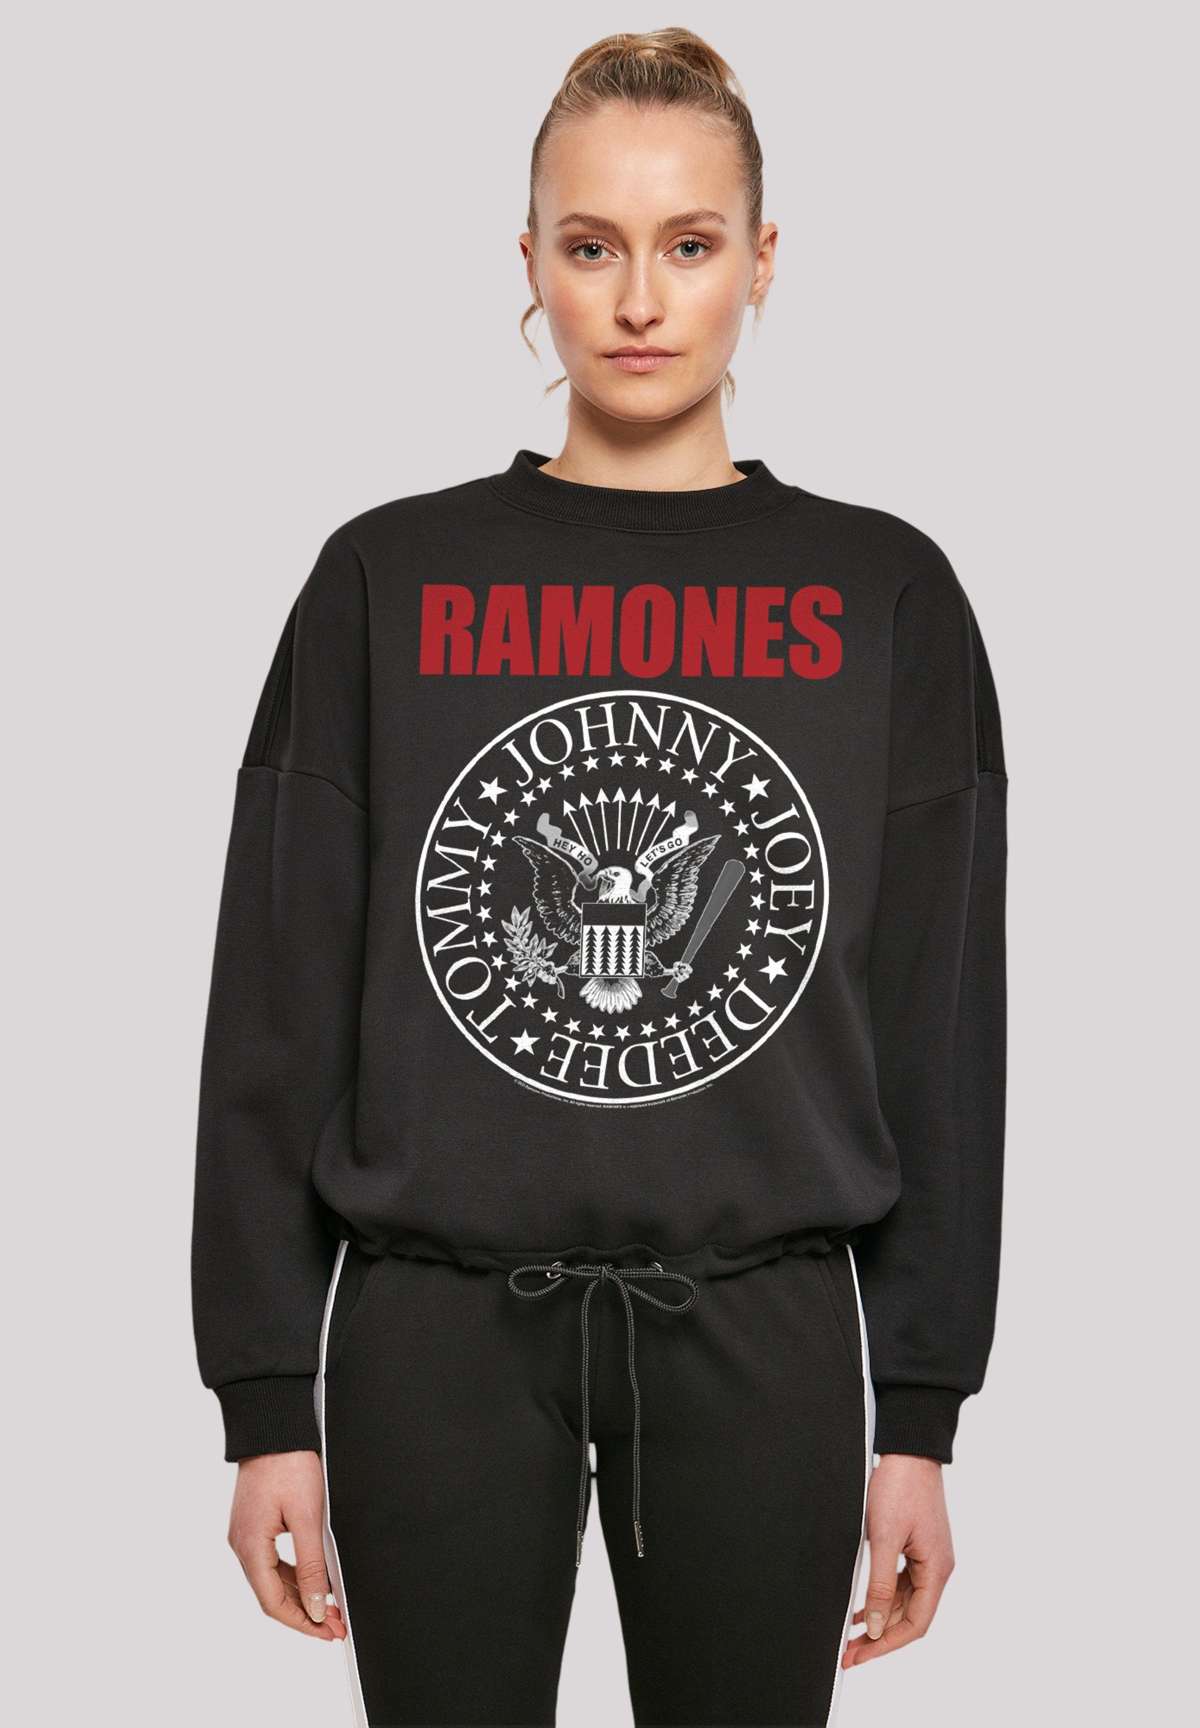 Толстовка Ramones Rock Music Band с красной текстовой печатью премиум-качества